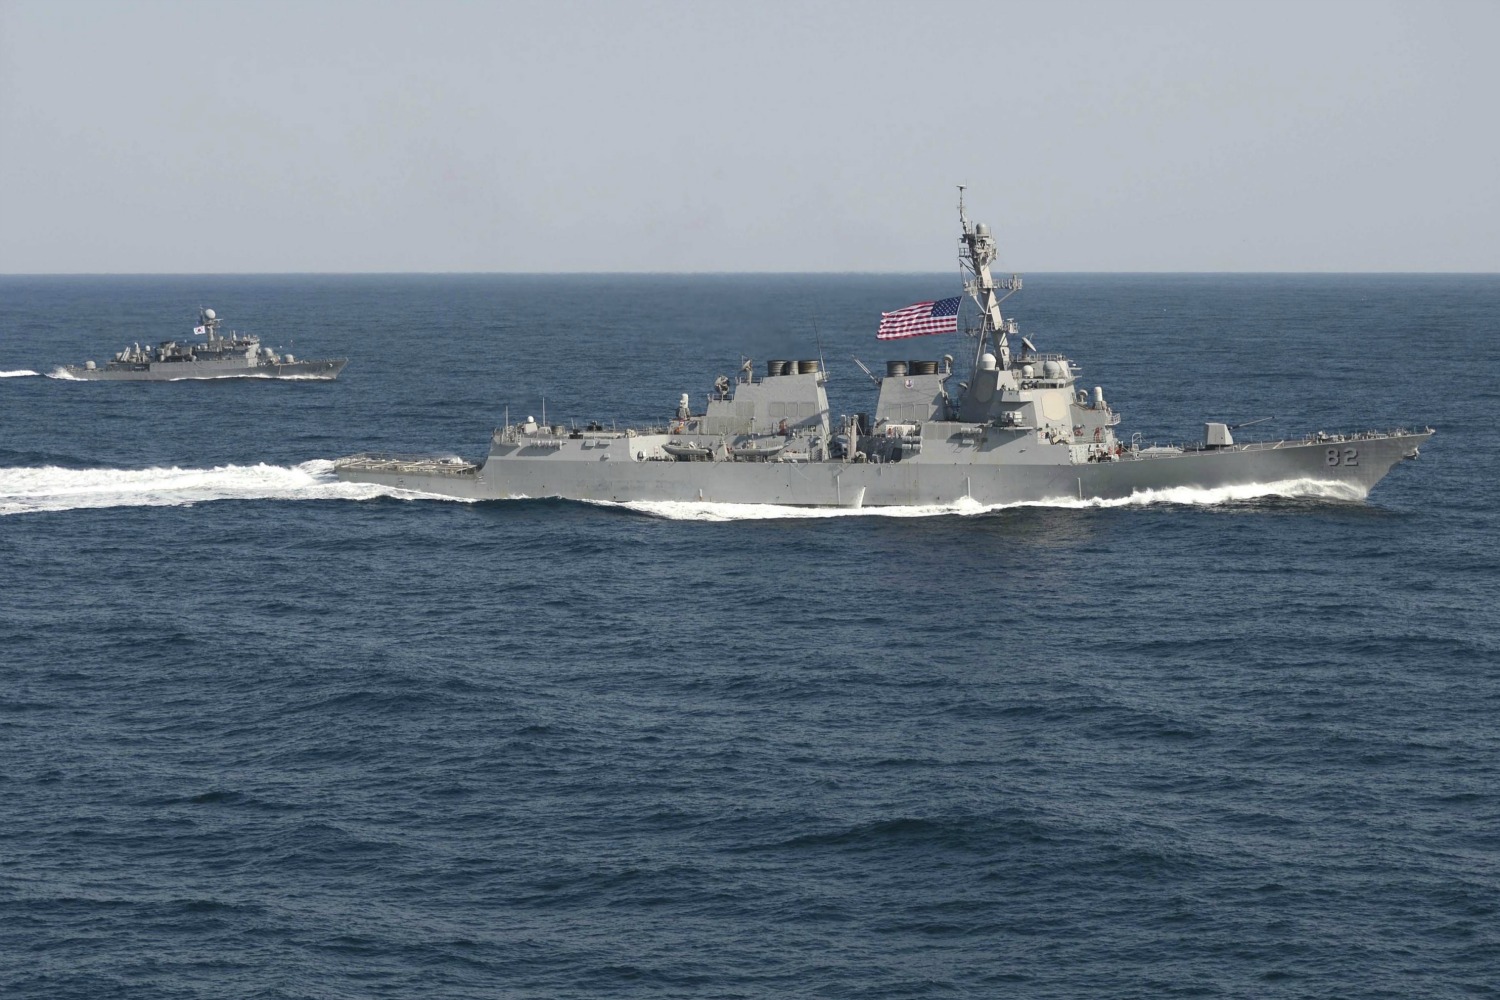 EEUU no se amedrenta y su buque de guerra seguirá navegando cerca de la isla que China reclama